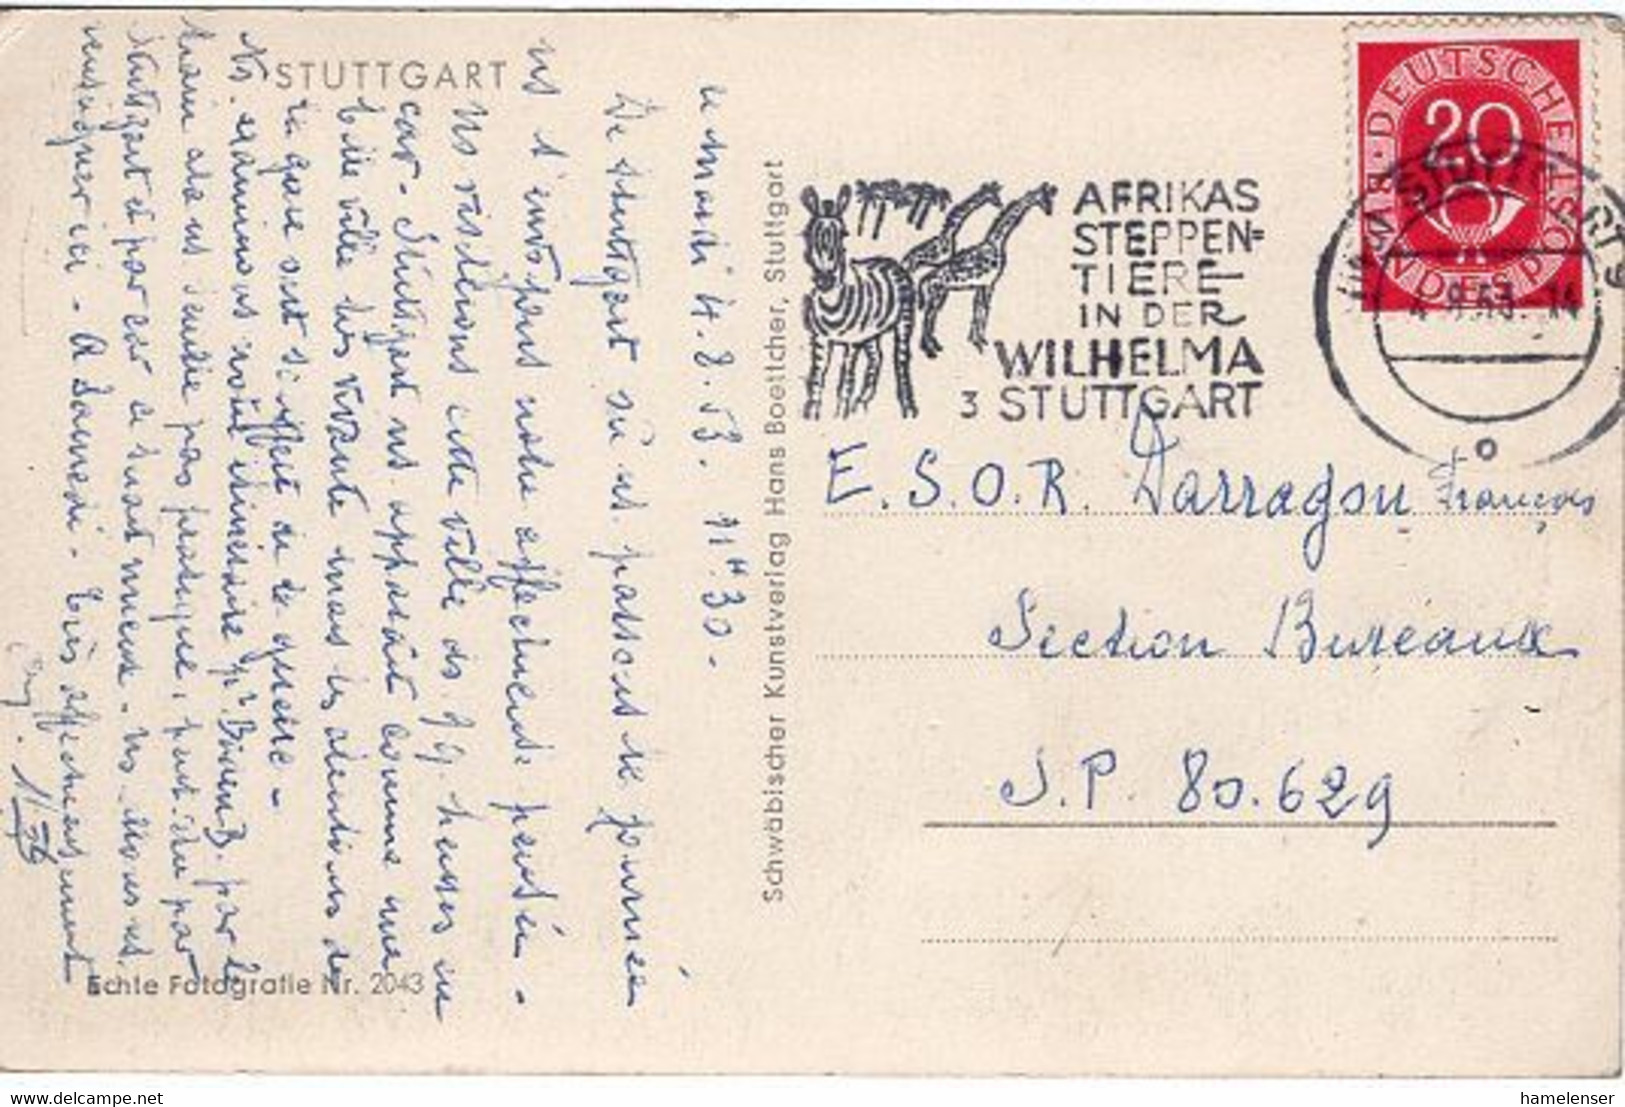 51708 - Bund - 1953 - 20Pfg Posthorn EF A AnsKte STUTTGART - AFRIKAS STEPPENTIERE -> S.P. 80.629 (Frankreich) - Jirafas